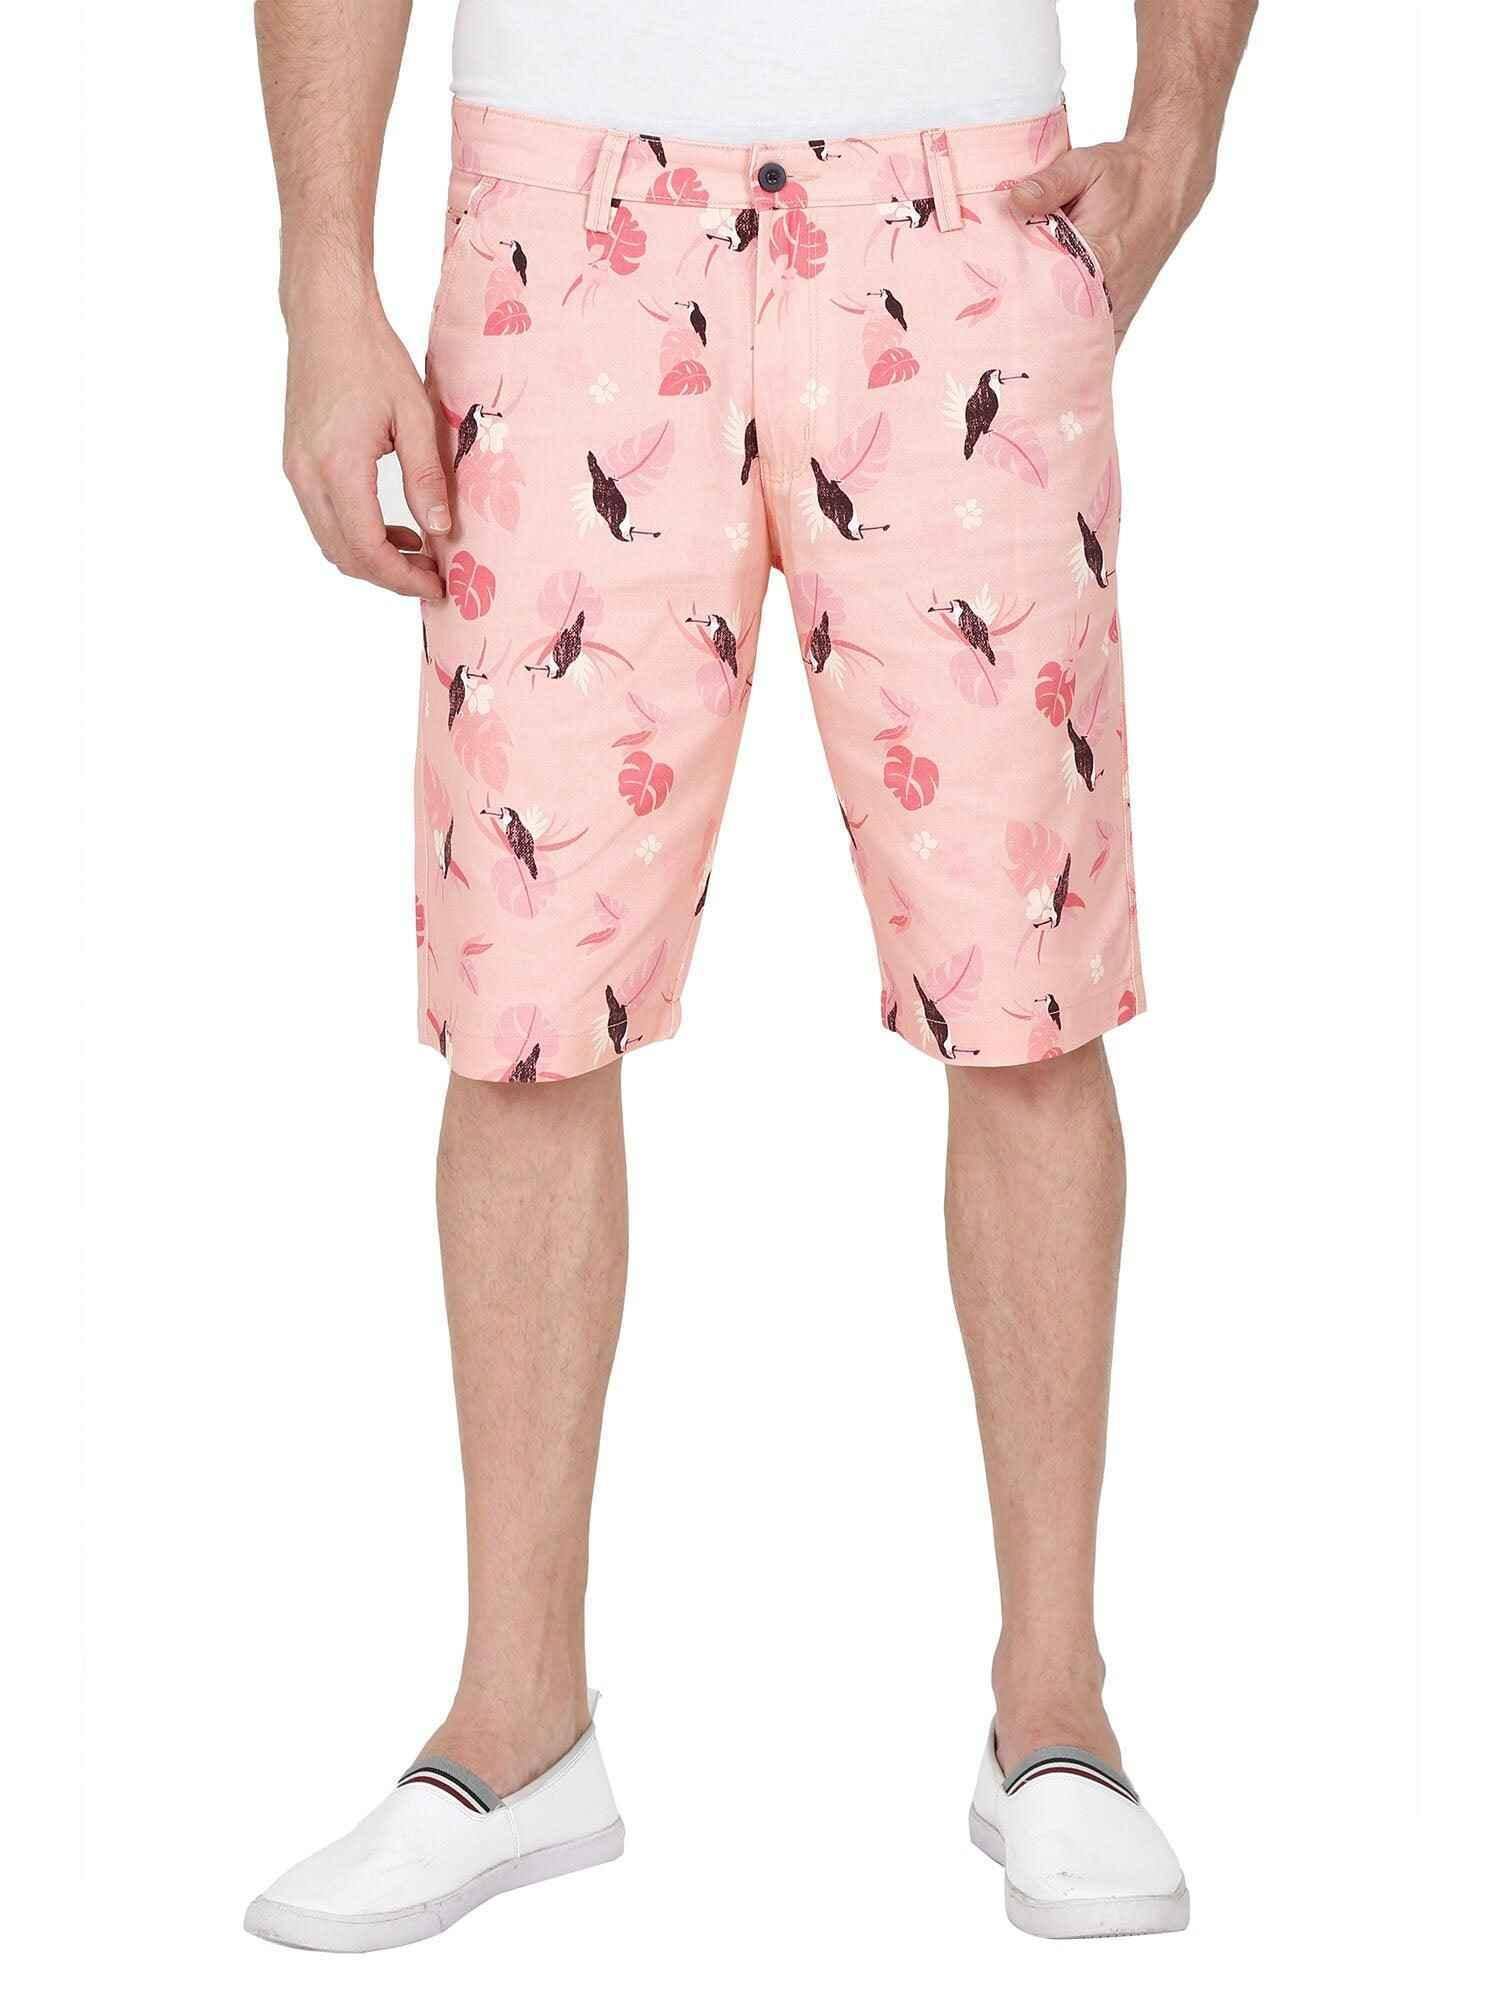 Peach Men Bird Printed Cotton Shorts - Guniaa Fashions